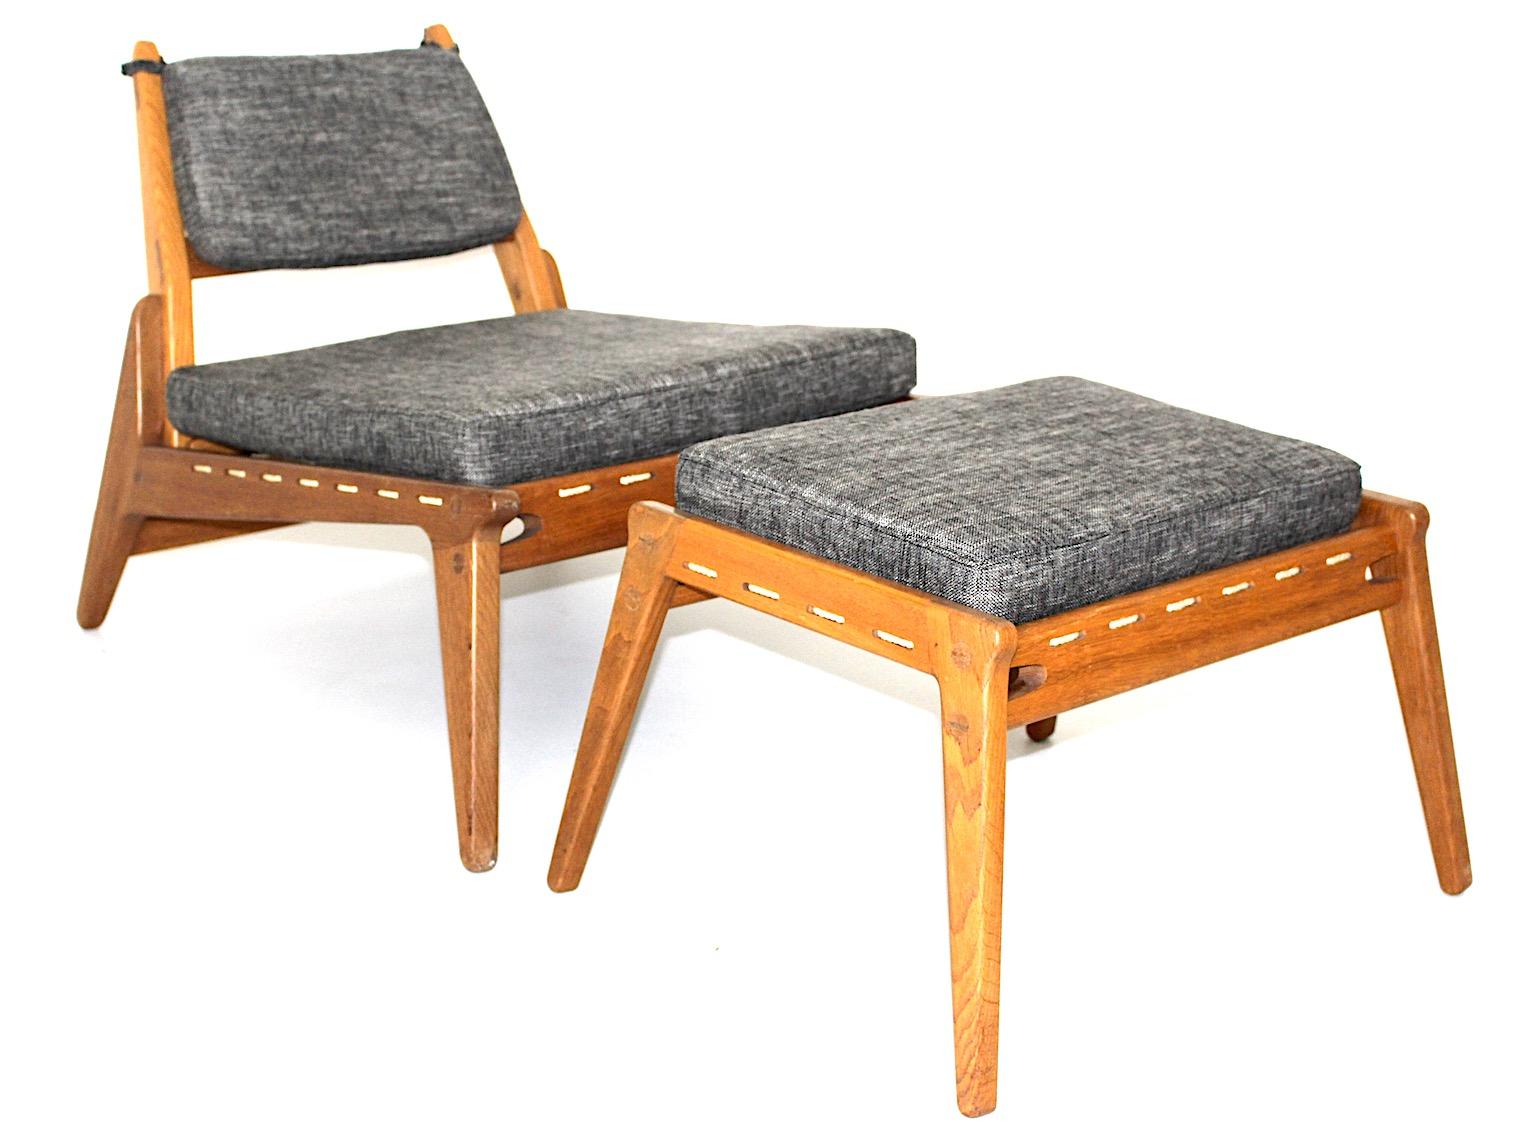 Mid Century Modern Vintage freistehende organische Lounge-Stühle oder Sessel mit Ottomane Paar Duo aus massiver Eiche und grauem Stoff um 1960.
Ein fantastisches Duo aus Sessel und Ottomane mit organischen und eleganten Eigenschaften. 
Während der